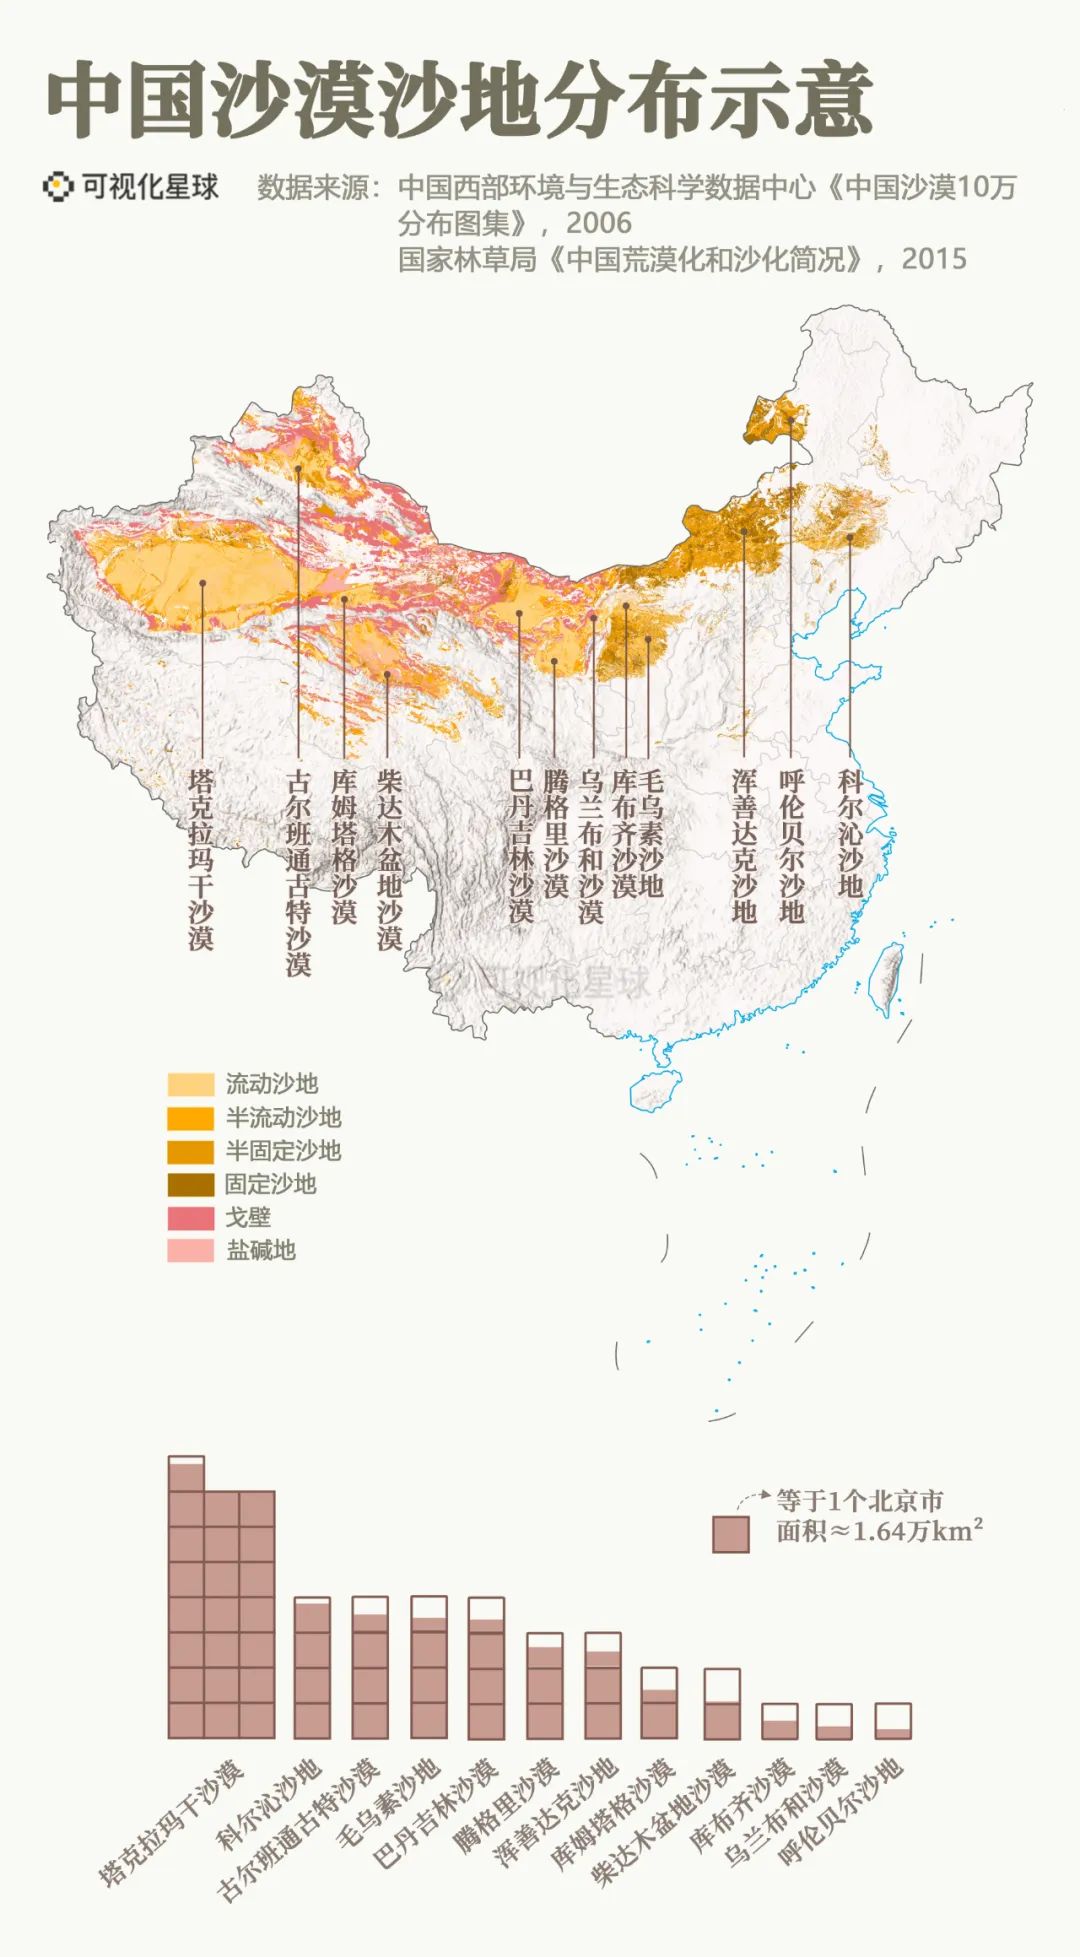 根据中国西部环境与生态科学中心制作的沙漠空间数据集统计,2006年